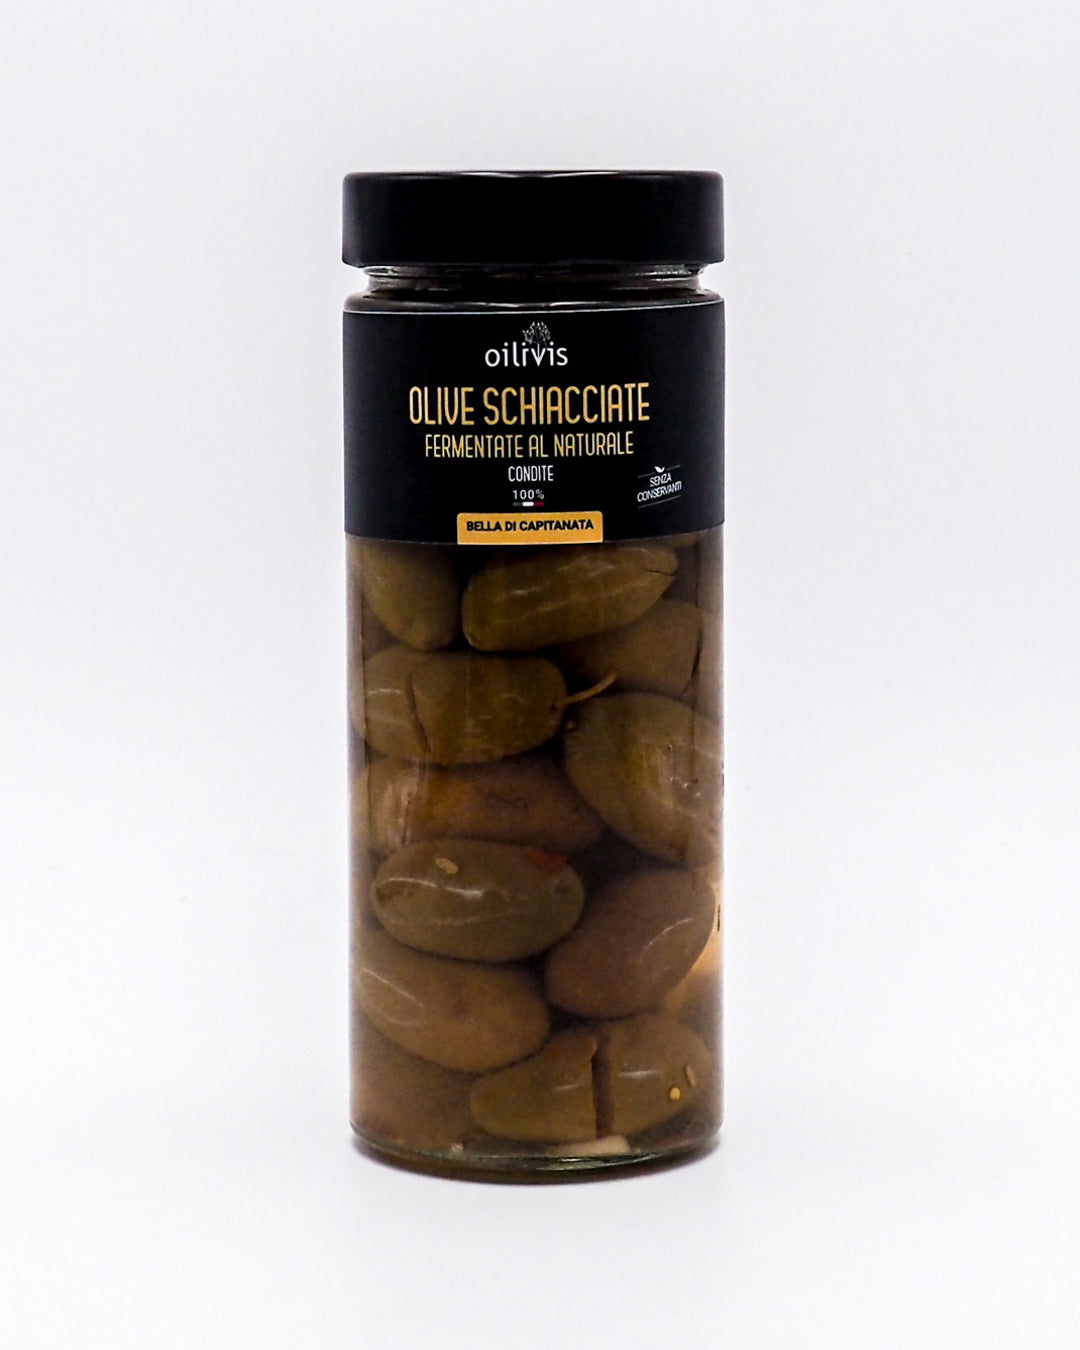 Olive Bella di Capitanata Schiacciate Fermentate al Naturale - Oilivis